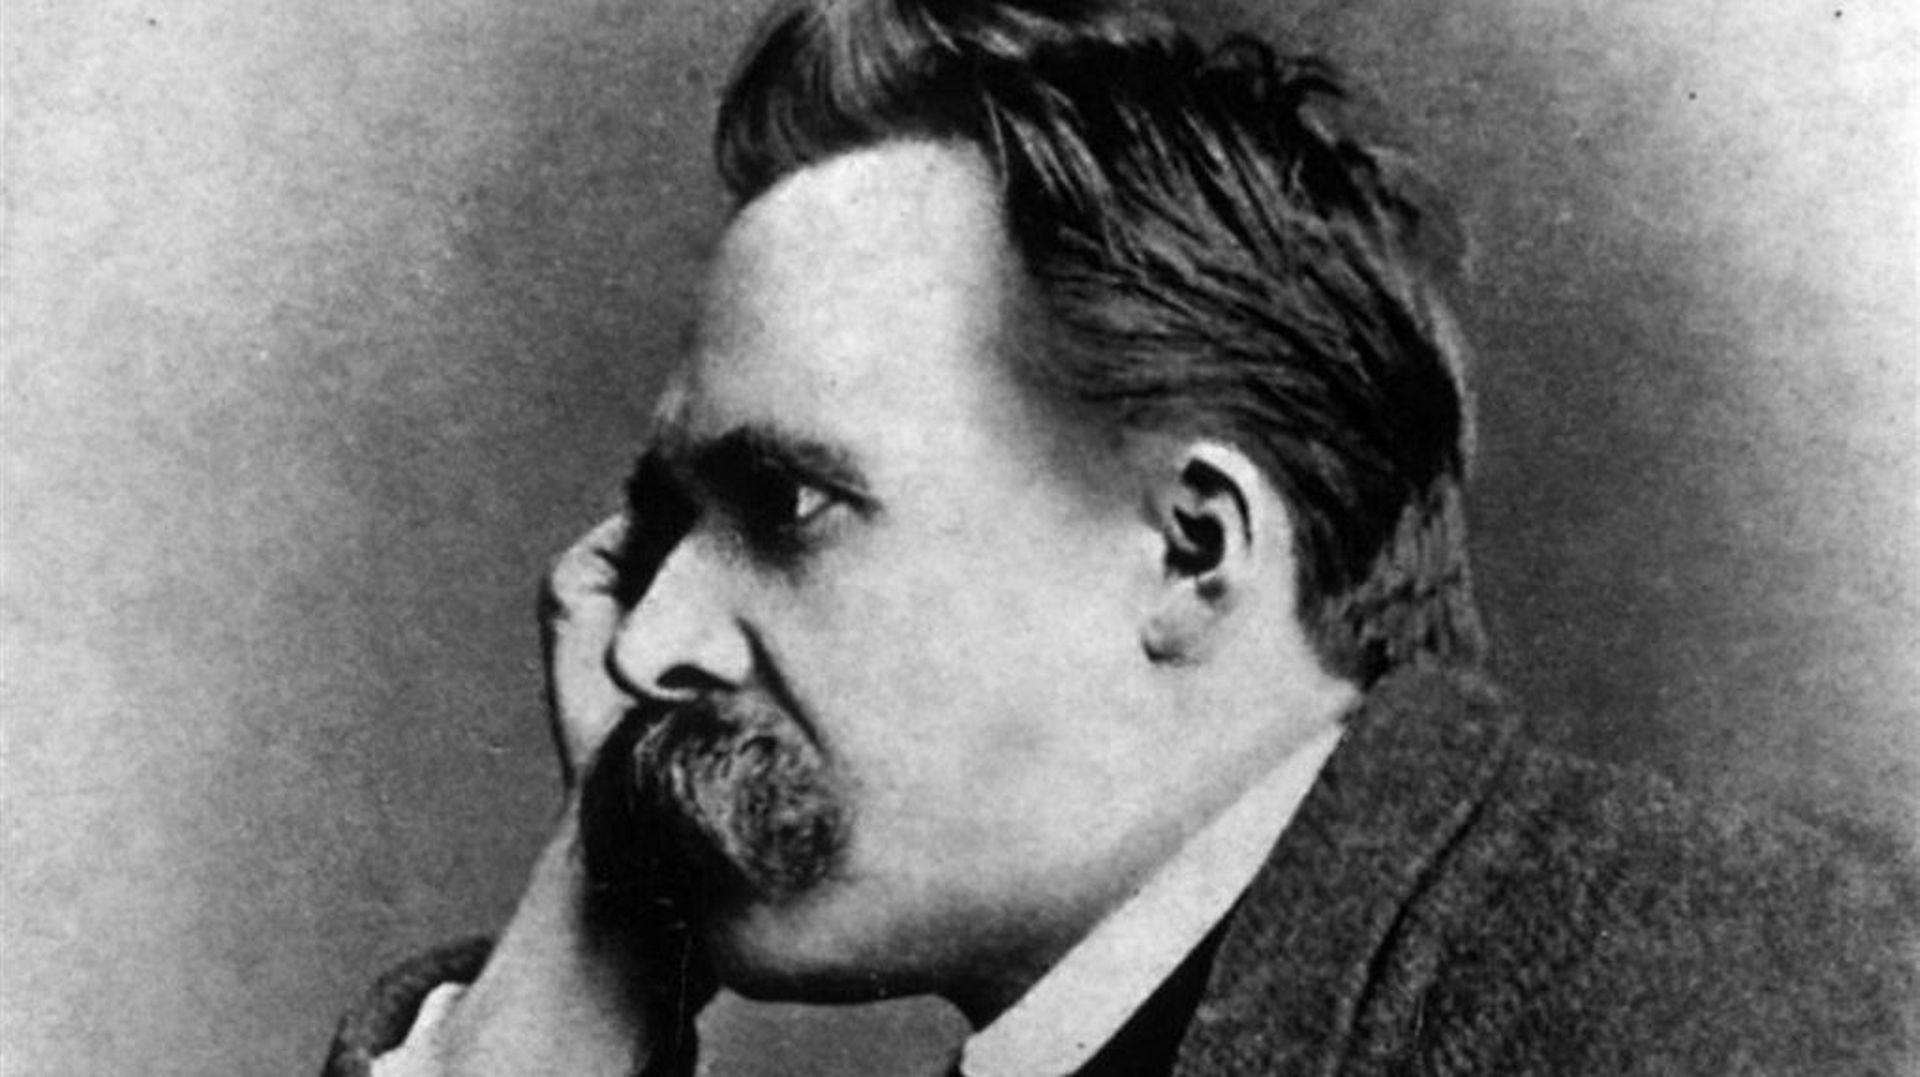 Nietzsche décrit deux formes de nihilisme : le nihilisme passif, qui se manifeste par le scepticisme et l'indifférence, et le nihilisme actif, qui est l'effondrement des croyances.